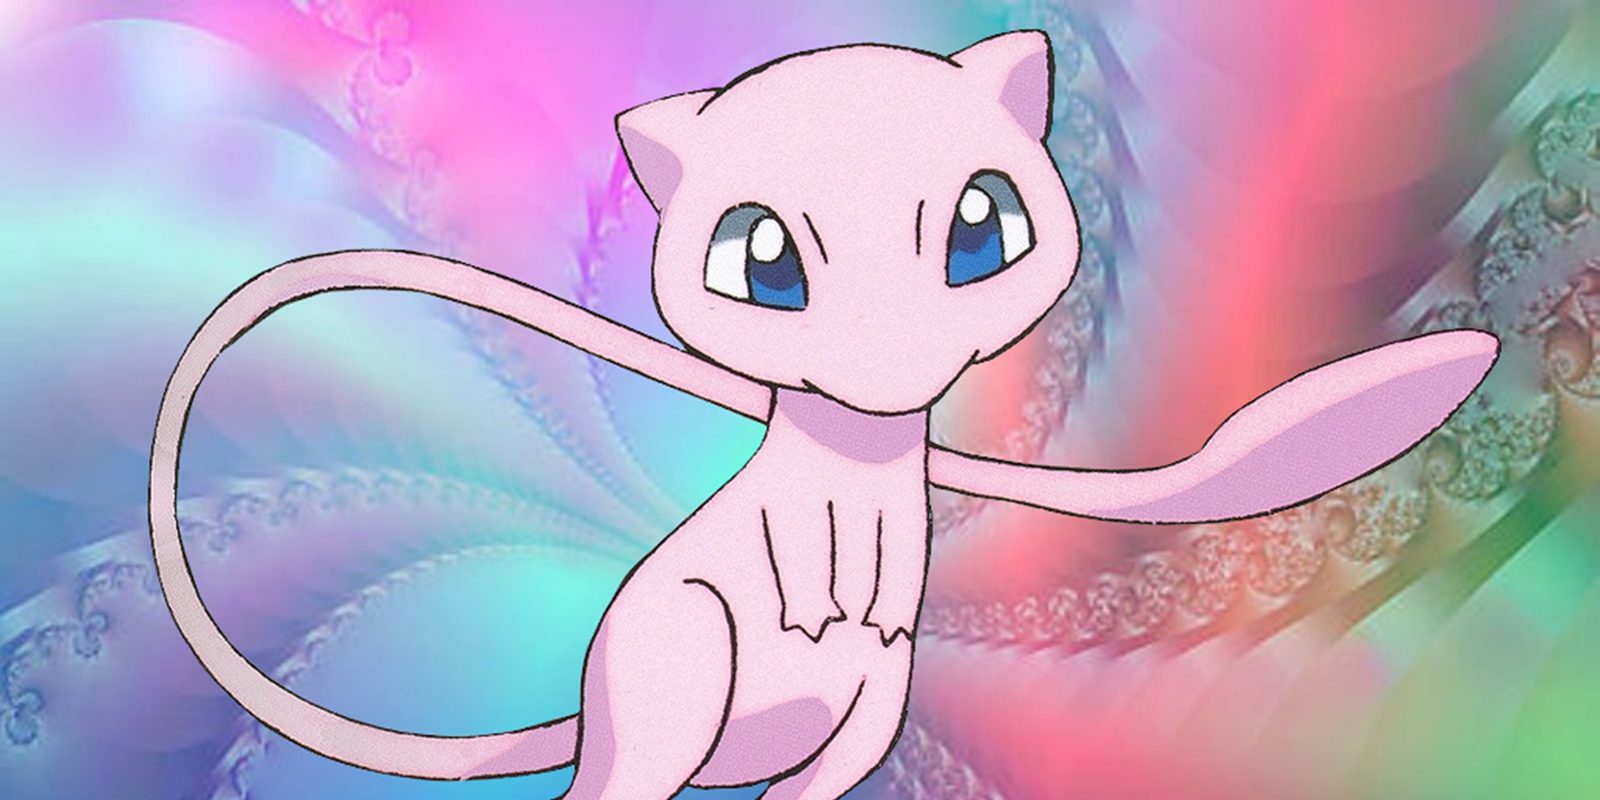 El Pokémon Mew será distribuido una vez más a principios de junio